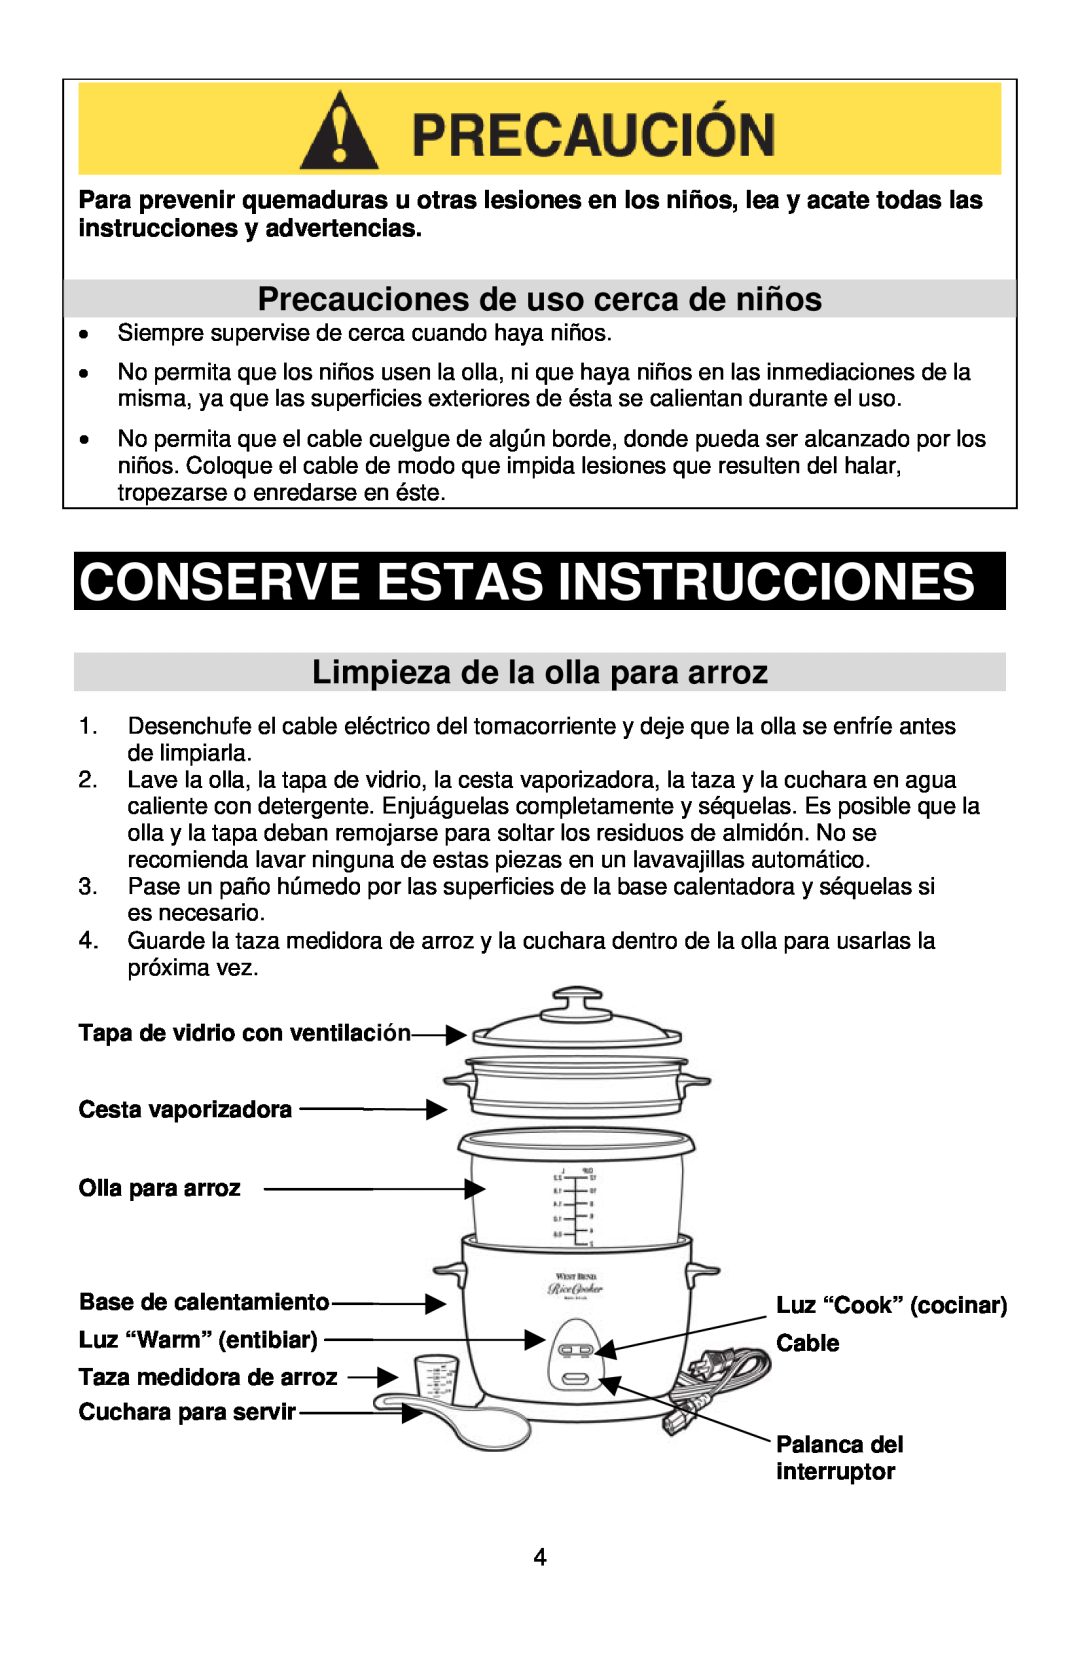 West Bend 12-Cup Automatic Rice Cooker Conserve Estas Instrucciones, Precauciones de uso cerca de niños, Olla para arroz 